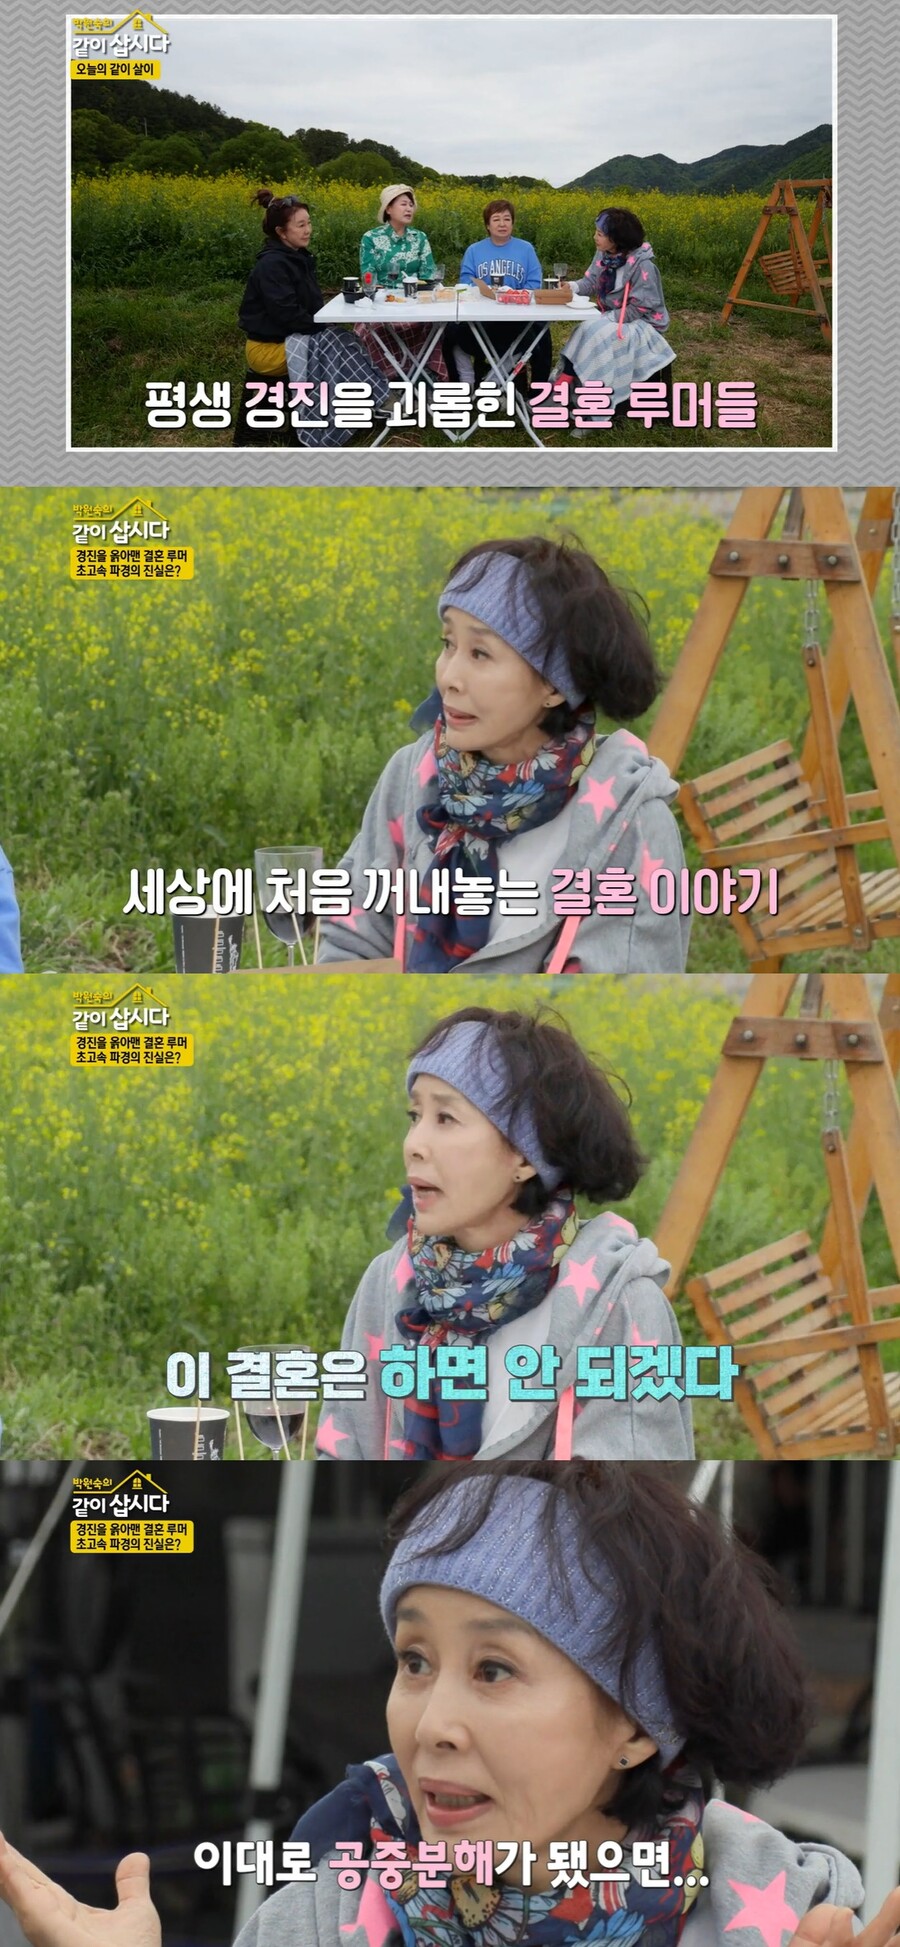 ▲ KBS2 예능 프로그램 '박원숙의 같이 삽시다3' 배우 이경진. 출처| KBS